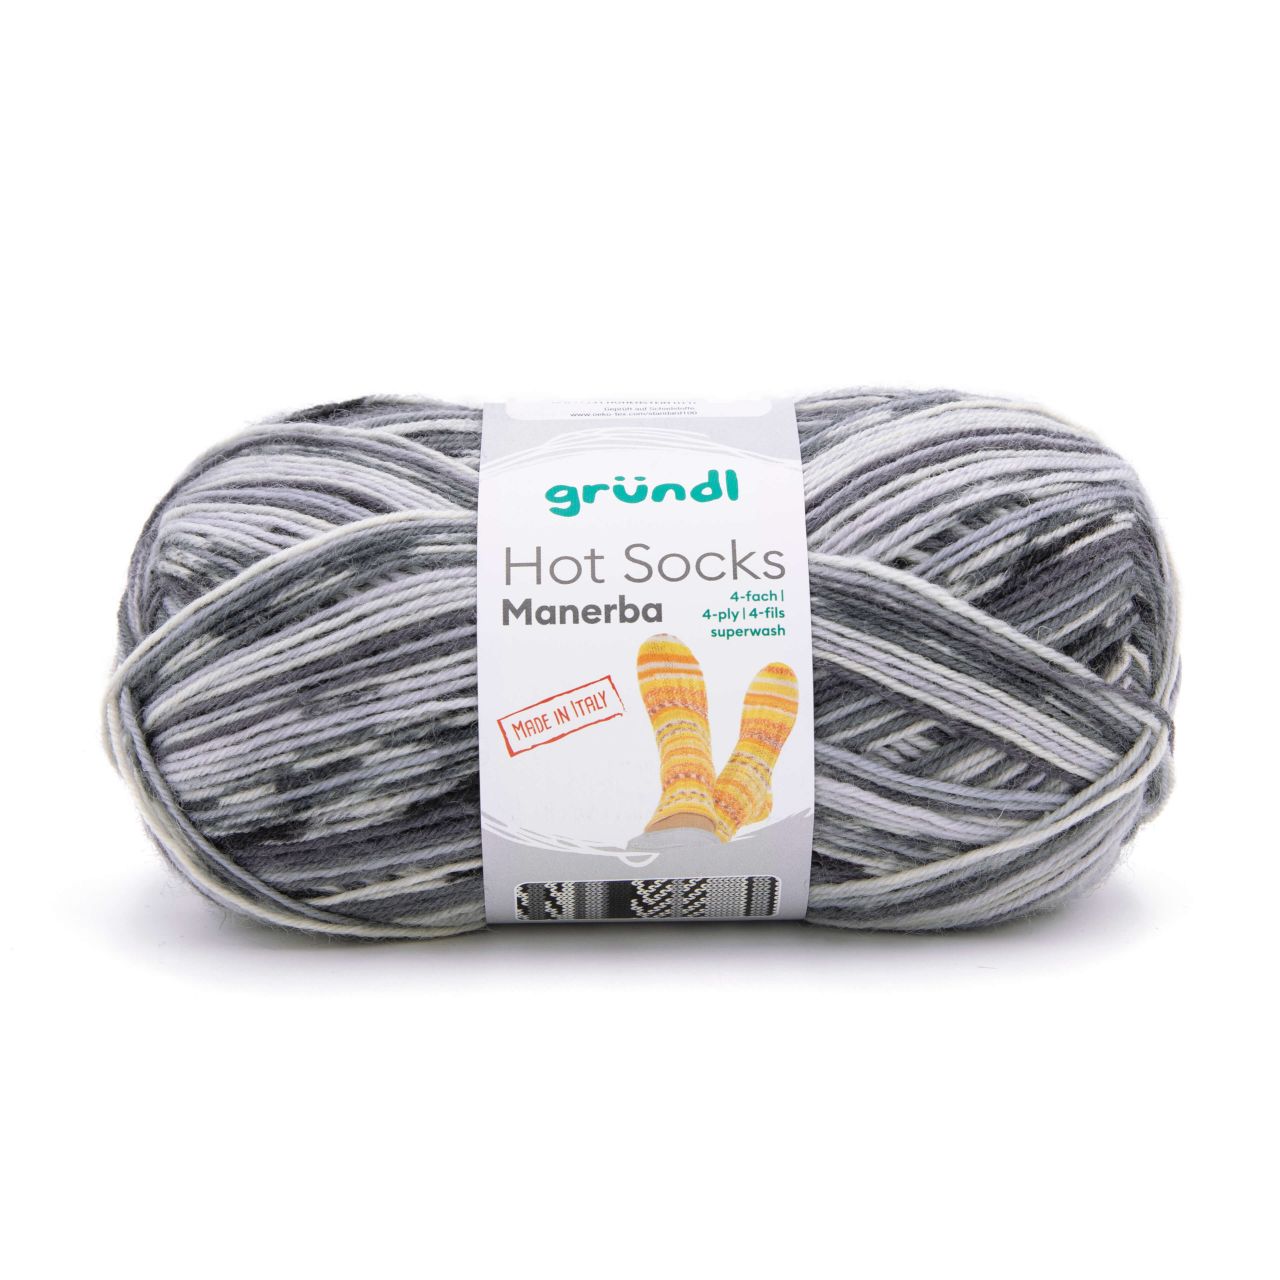 Gründl Wolle Hot Socks Manerba,100 g, 4-fach,mausgrau-anthrazit-natur von gründl